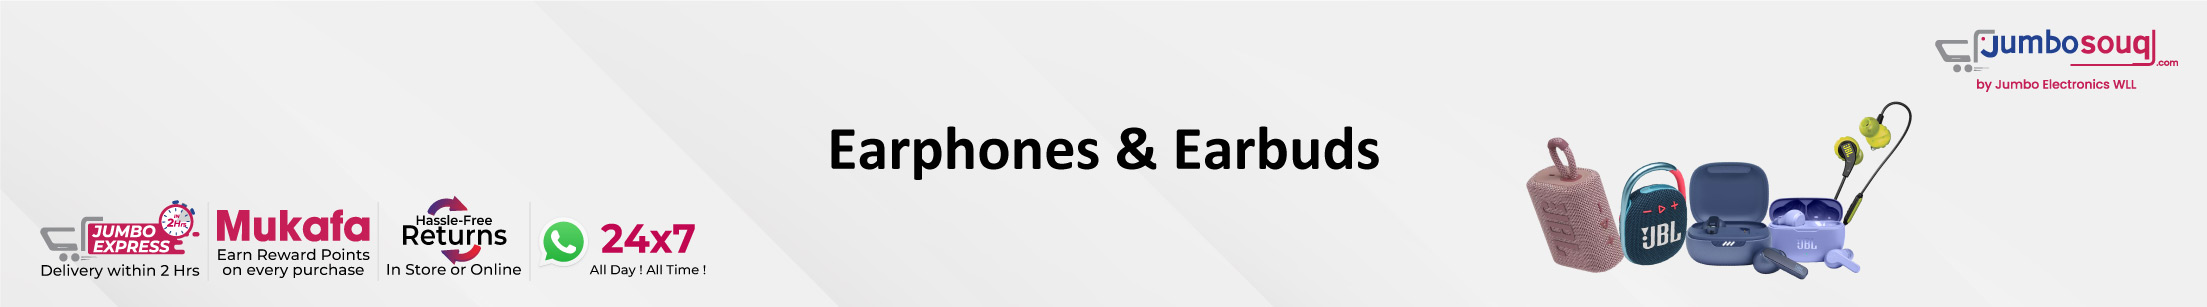 Earphones & Earbuds